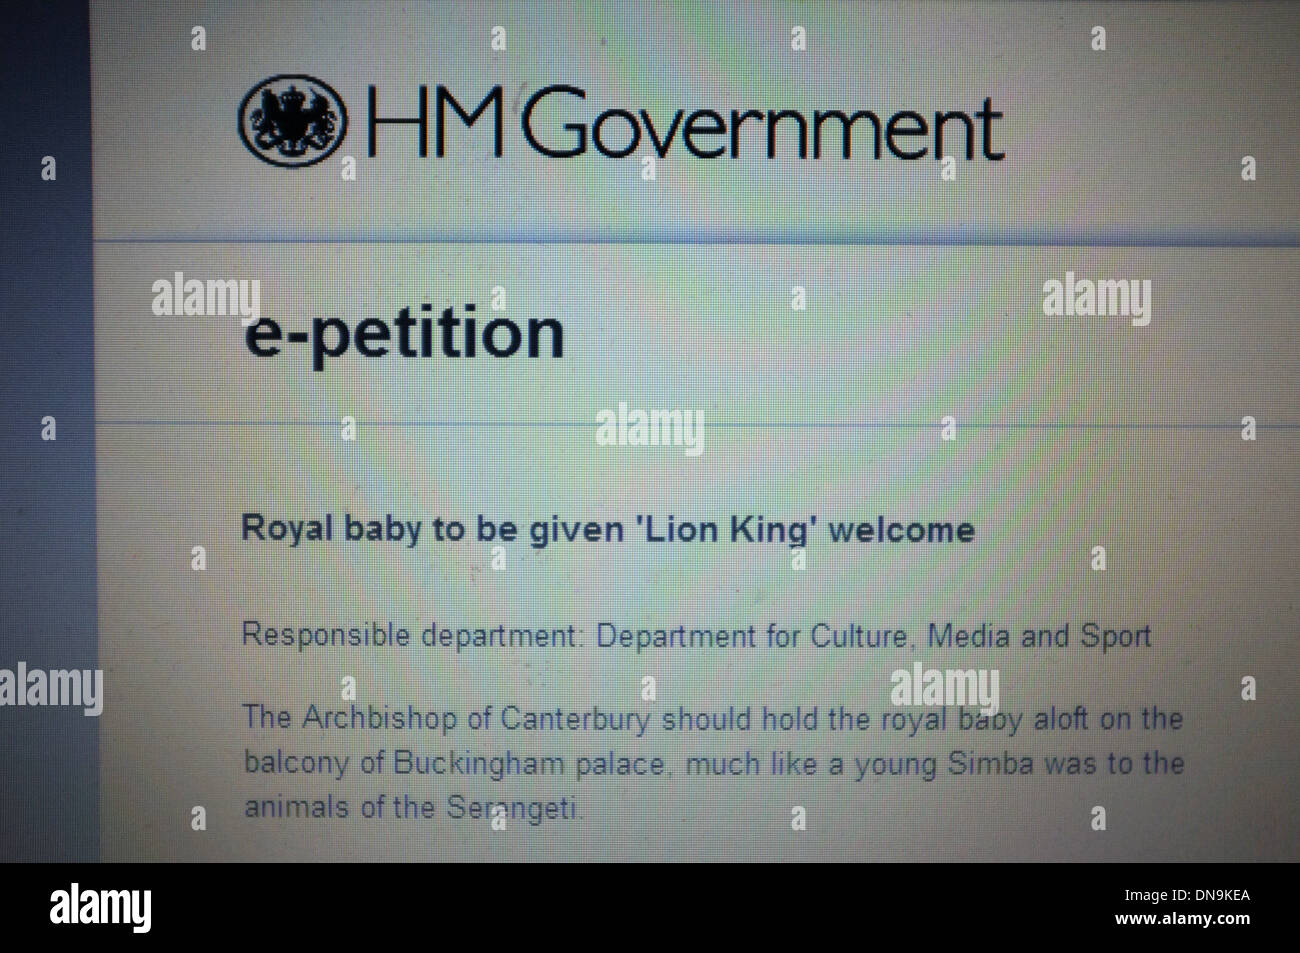 Eine Petition auf der Website die britische Regierung fordert das neue königliche Baby, eine König der Löwen willkommen geheißen werden. Stockfoto